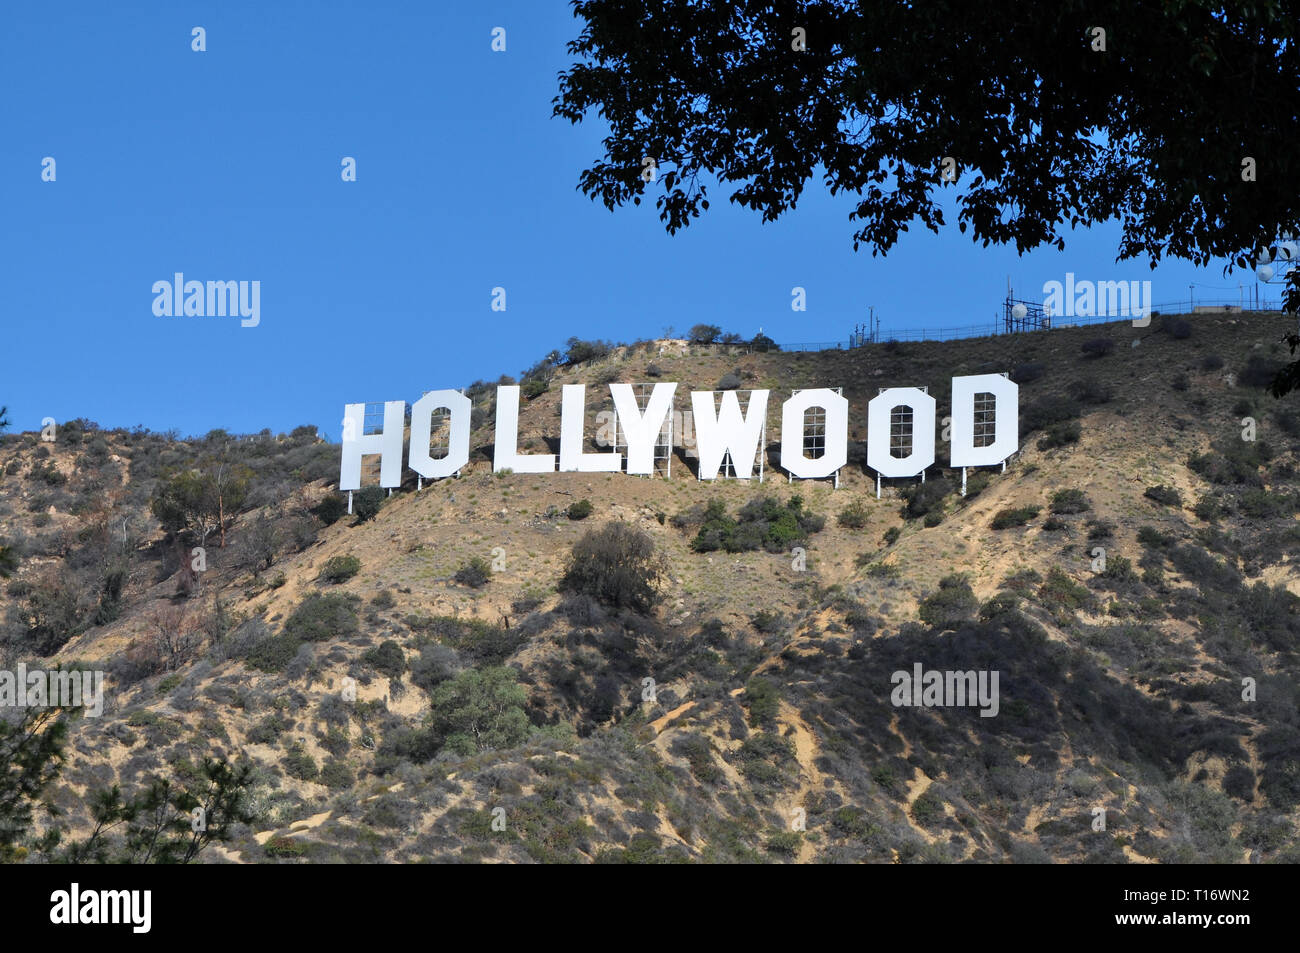 LOS ANGELES, ESTADOS UNIDOS - 3 de noviembre de 2017: Una imagen del famoso cartel de Hollywood. Foto de stock